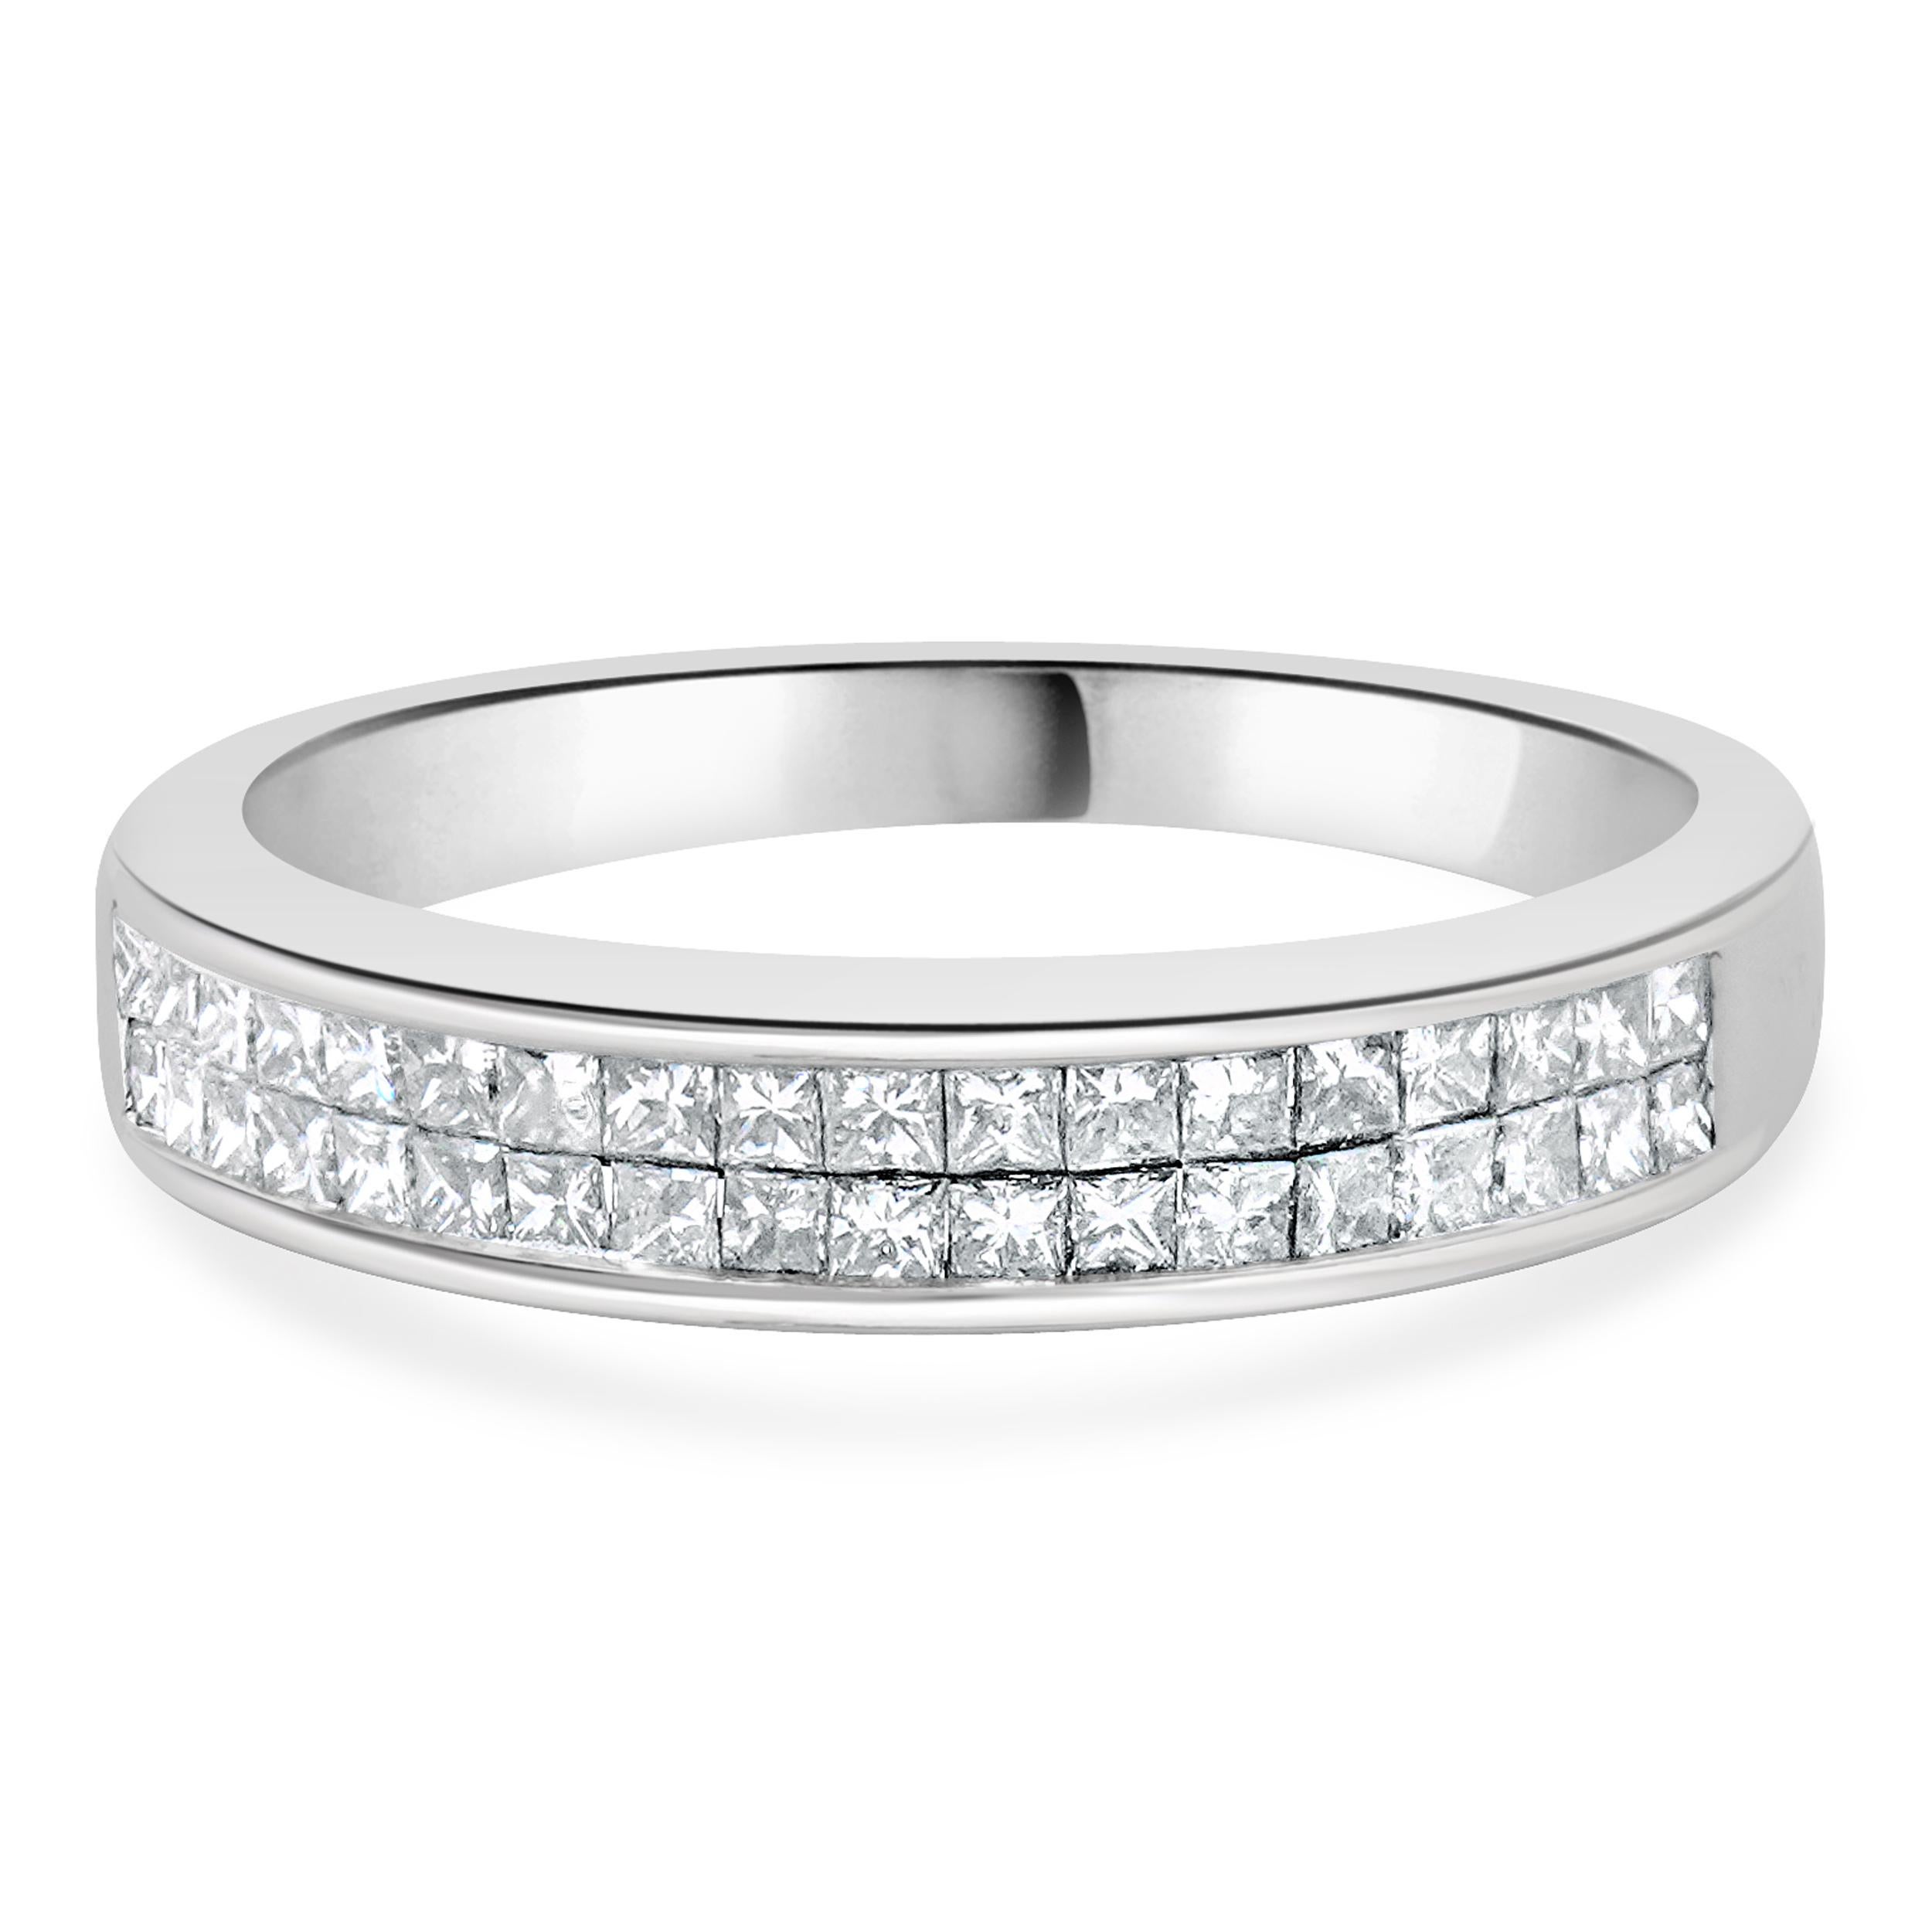 Bracelet double rangée de diamants en or blanc 14 carats, serti invisible